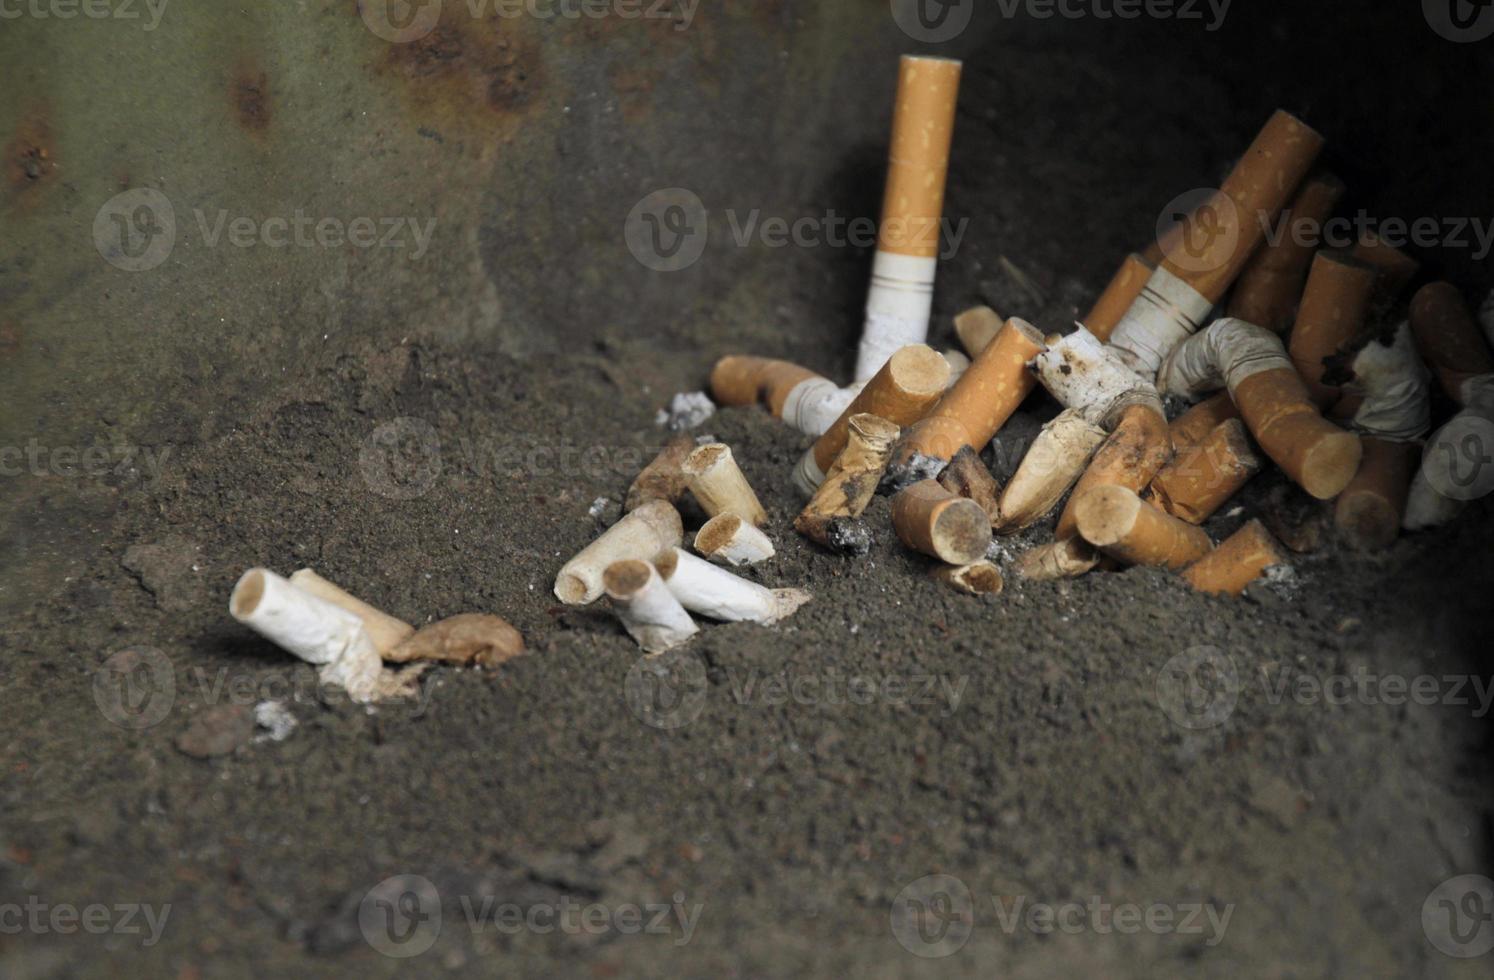 pericolo per la salute - mozziconi di sigaretta in un posacenere foto